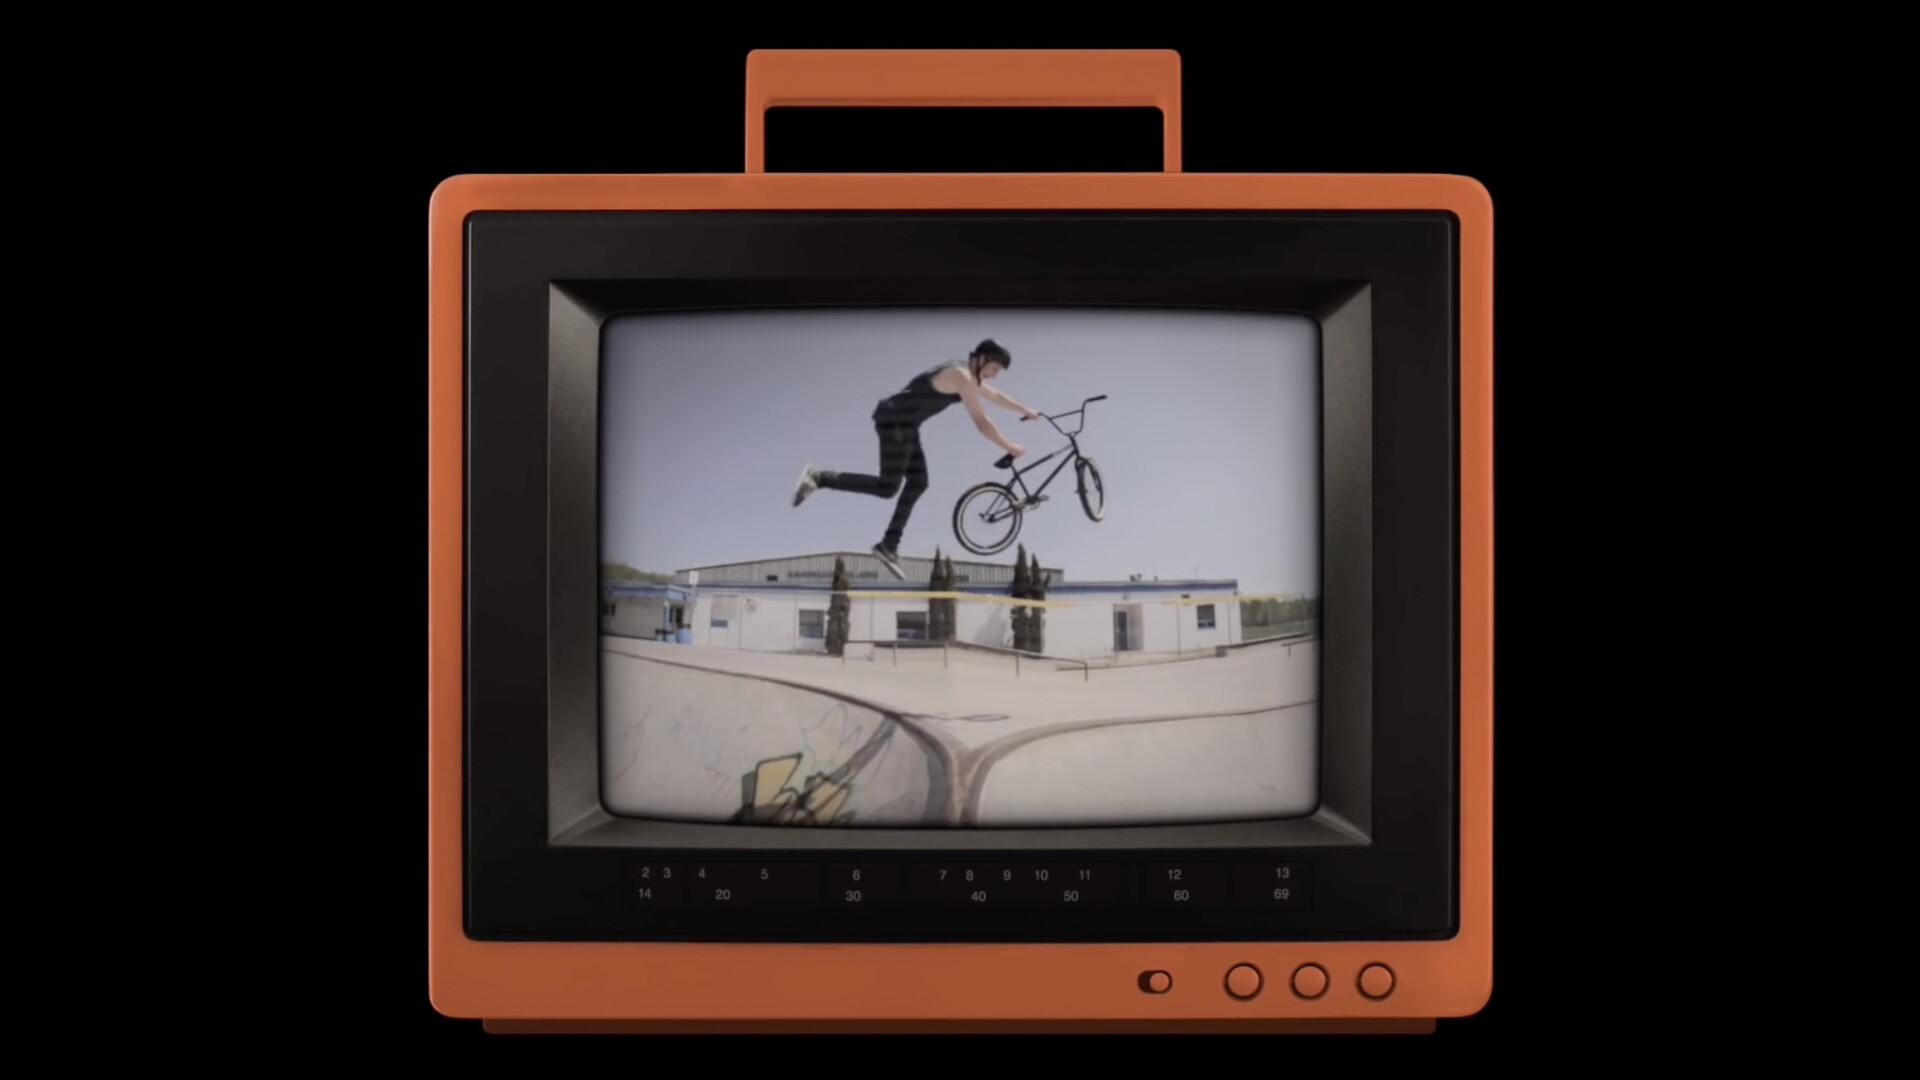 fcpx插件:老式电视机 SquidFX Retro TV 